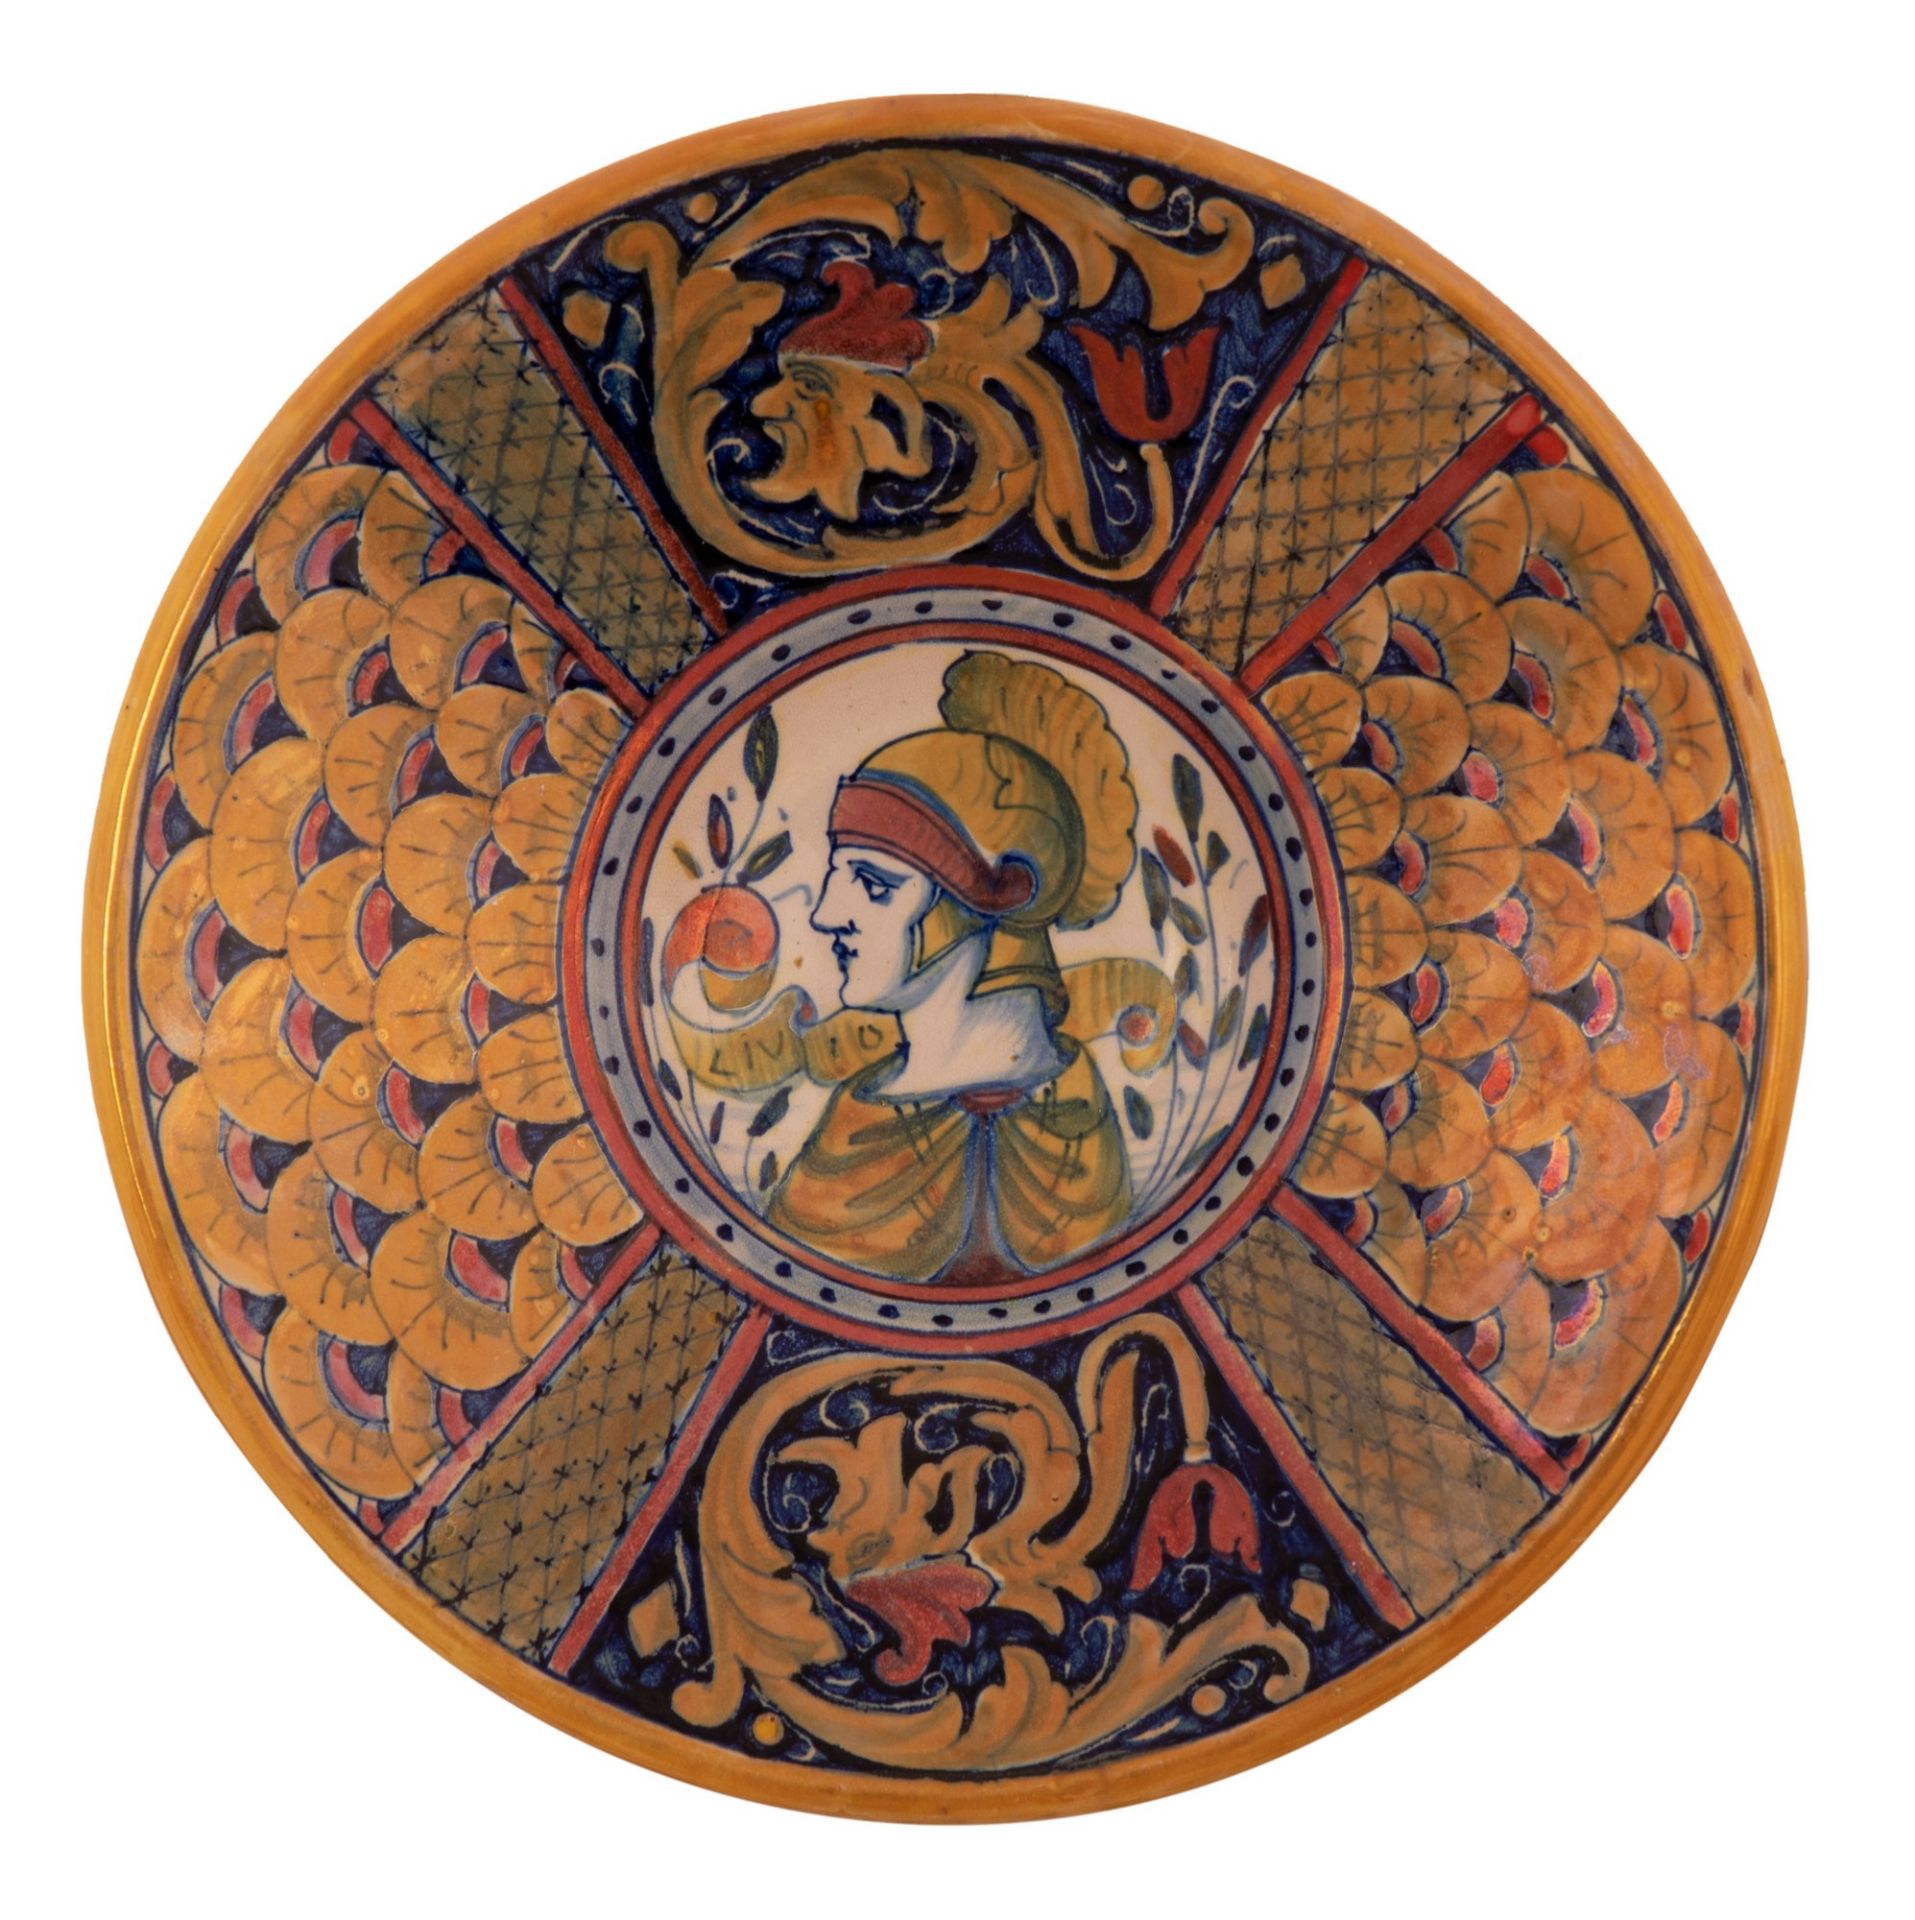  4 piatti in maiolica a lustro Gualdo Tadino raffigurante imperatori  - Bild 3 aus 10